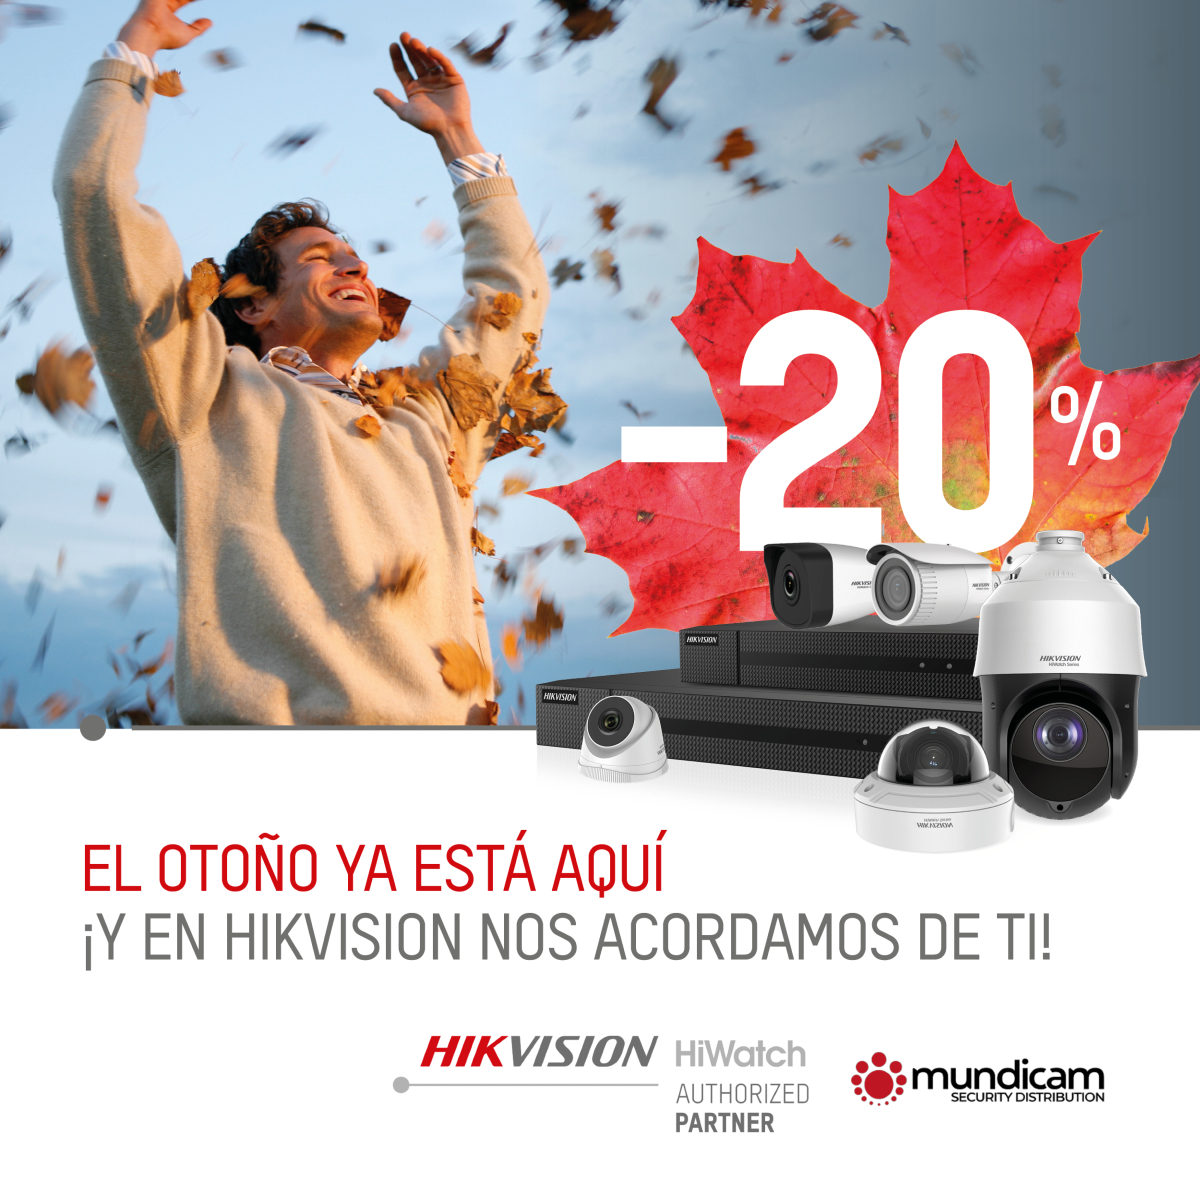 Promoción 2022 20% hikvision hiwatch